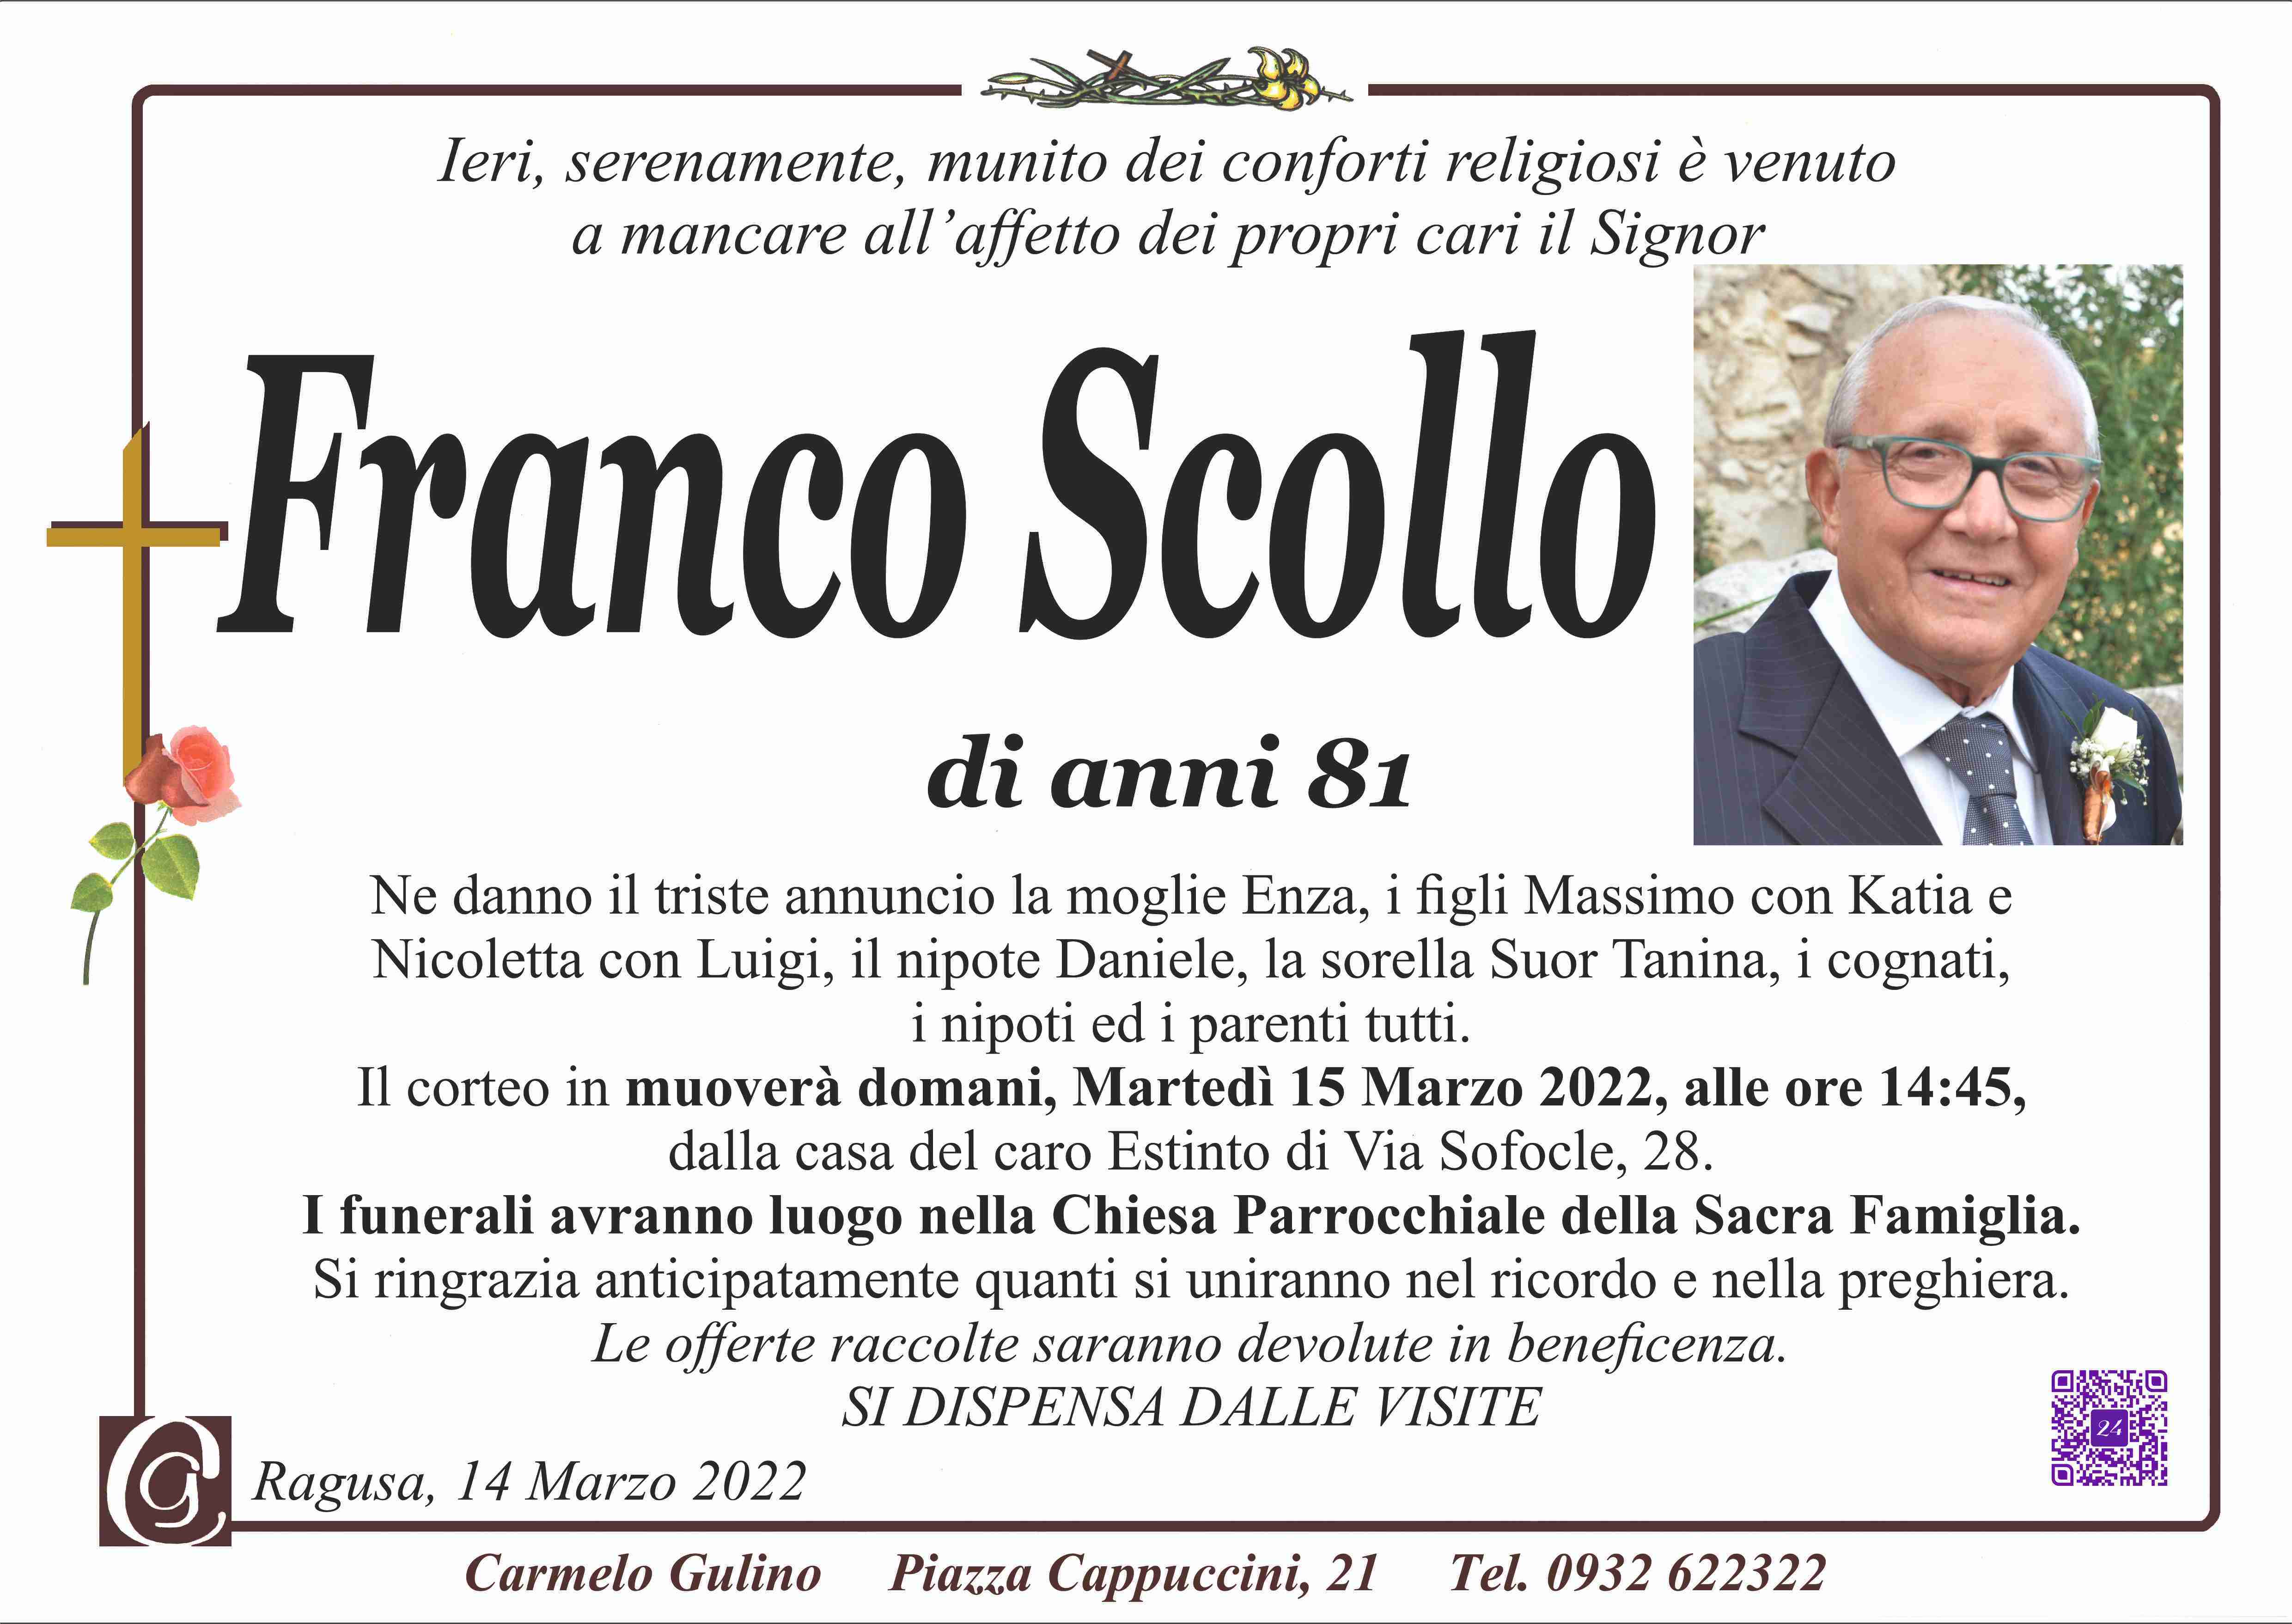 Franco Scollo